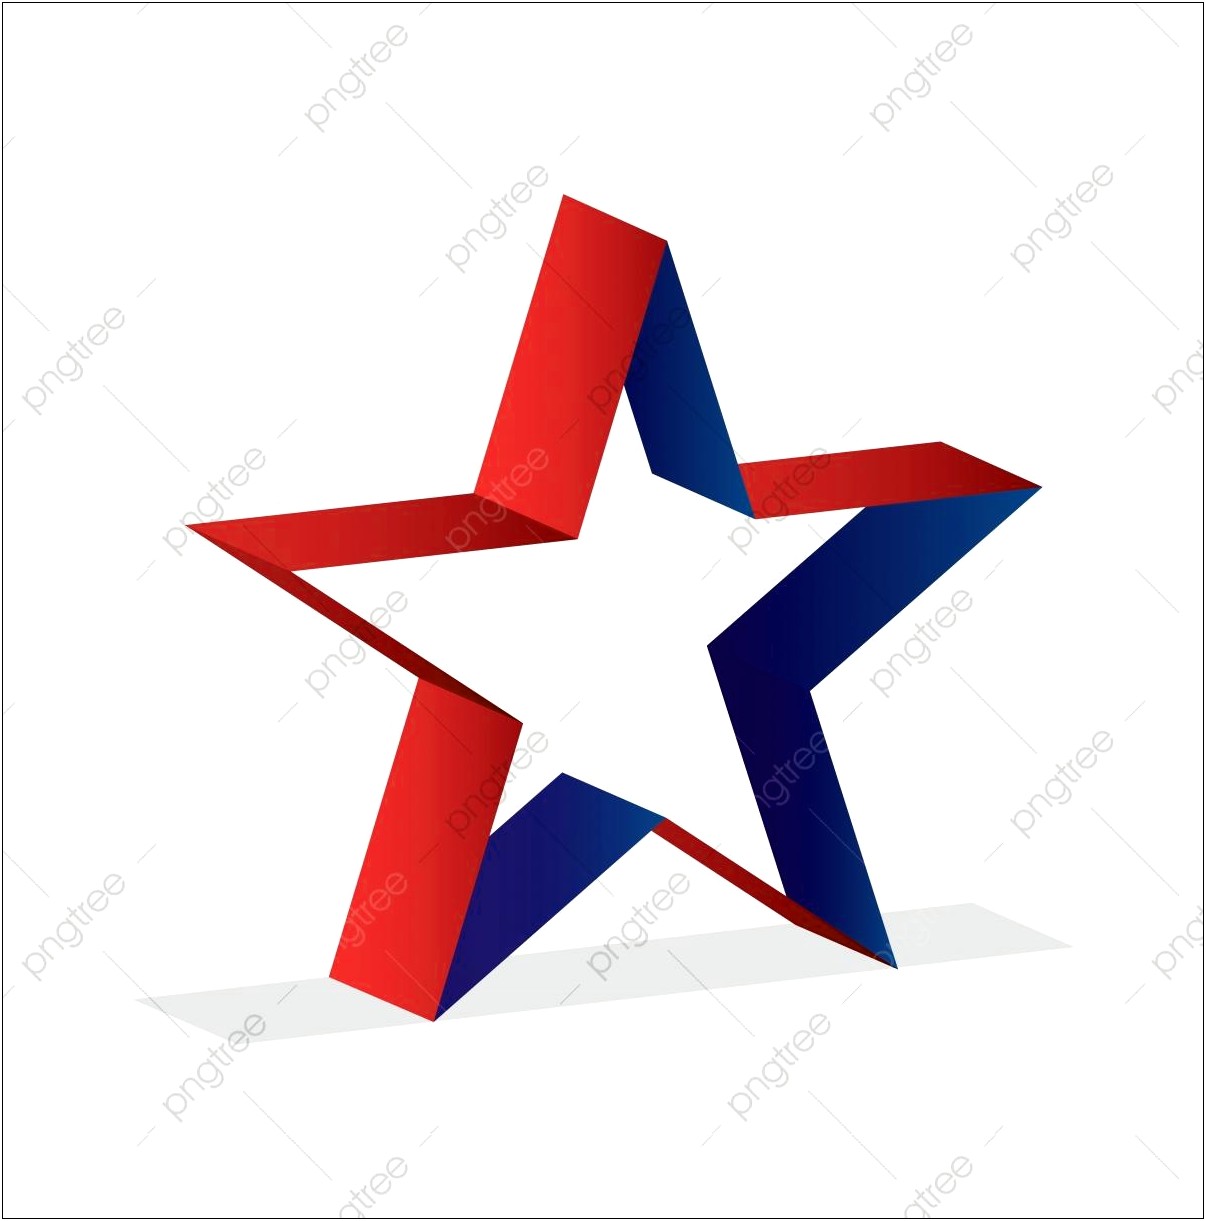 3d Star Logo Free Psd Template